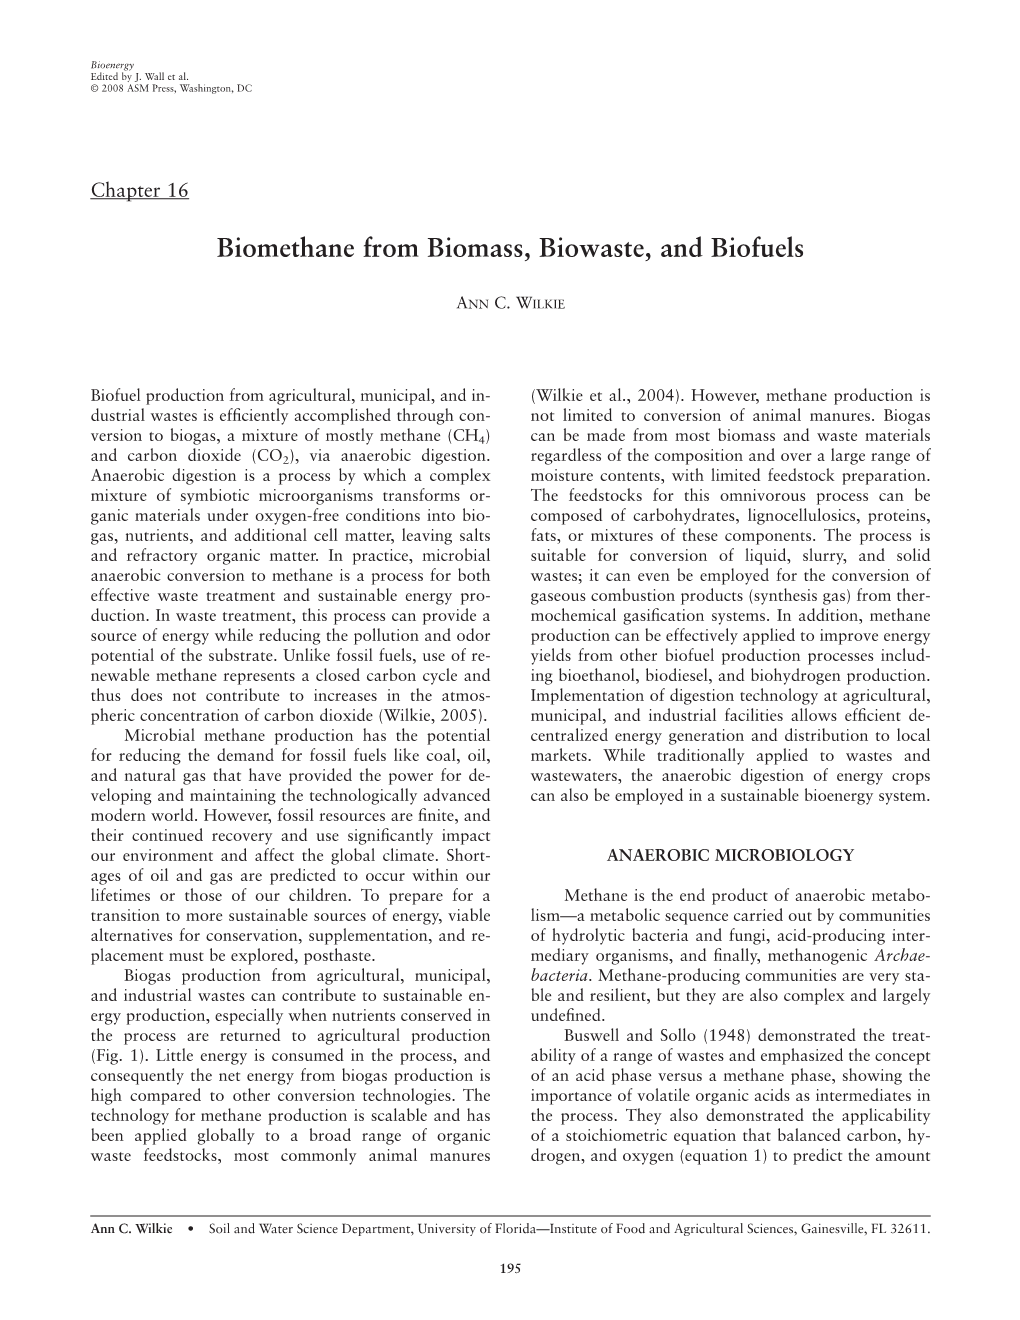 Biomethane from Biomass, Biowaste, and Biofuels